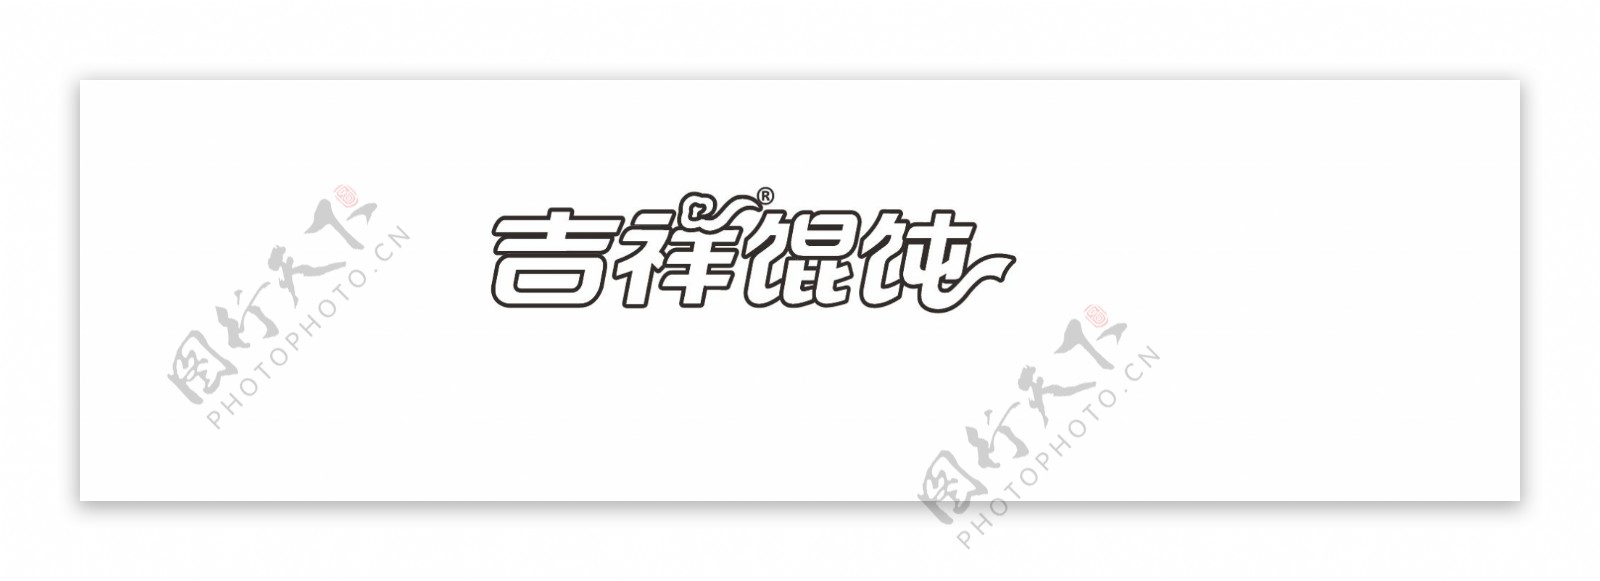 吉祥馄饨logo